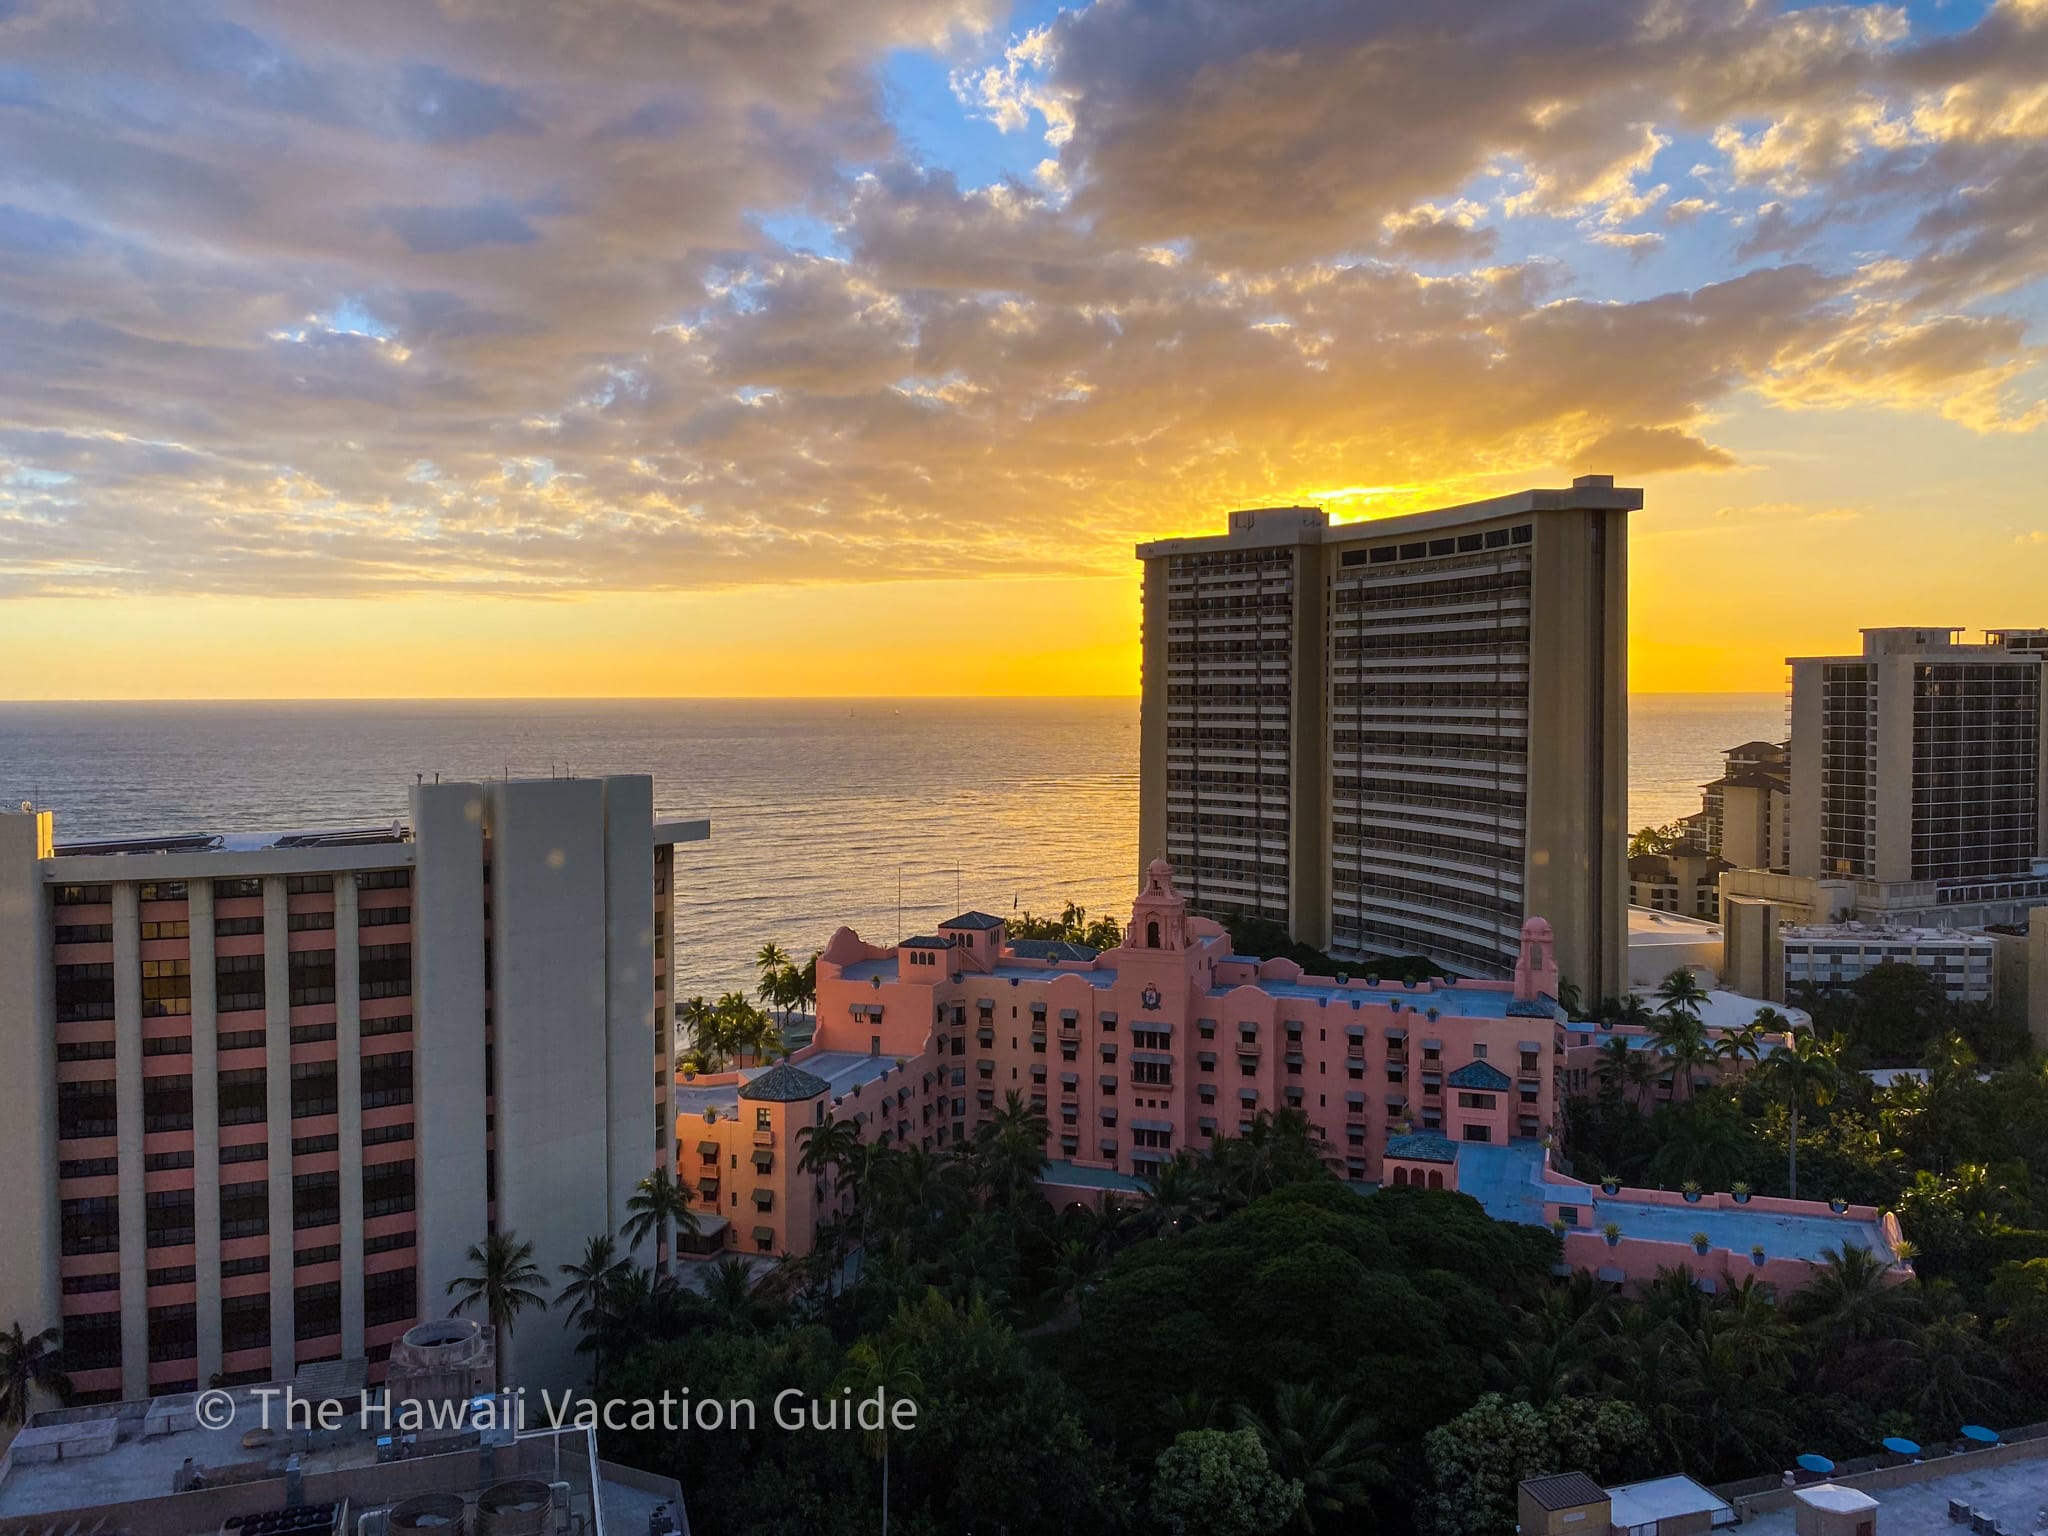 Where to stay in Waikiki - Royal Hawaiian and the Sheraton Waikiki